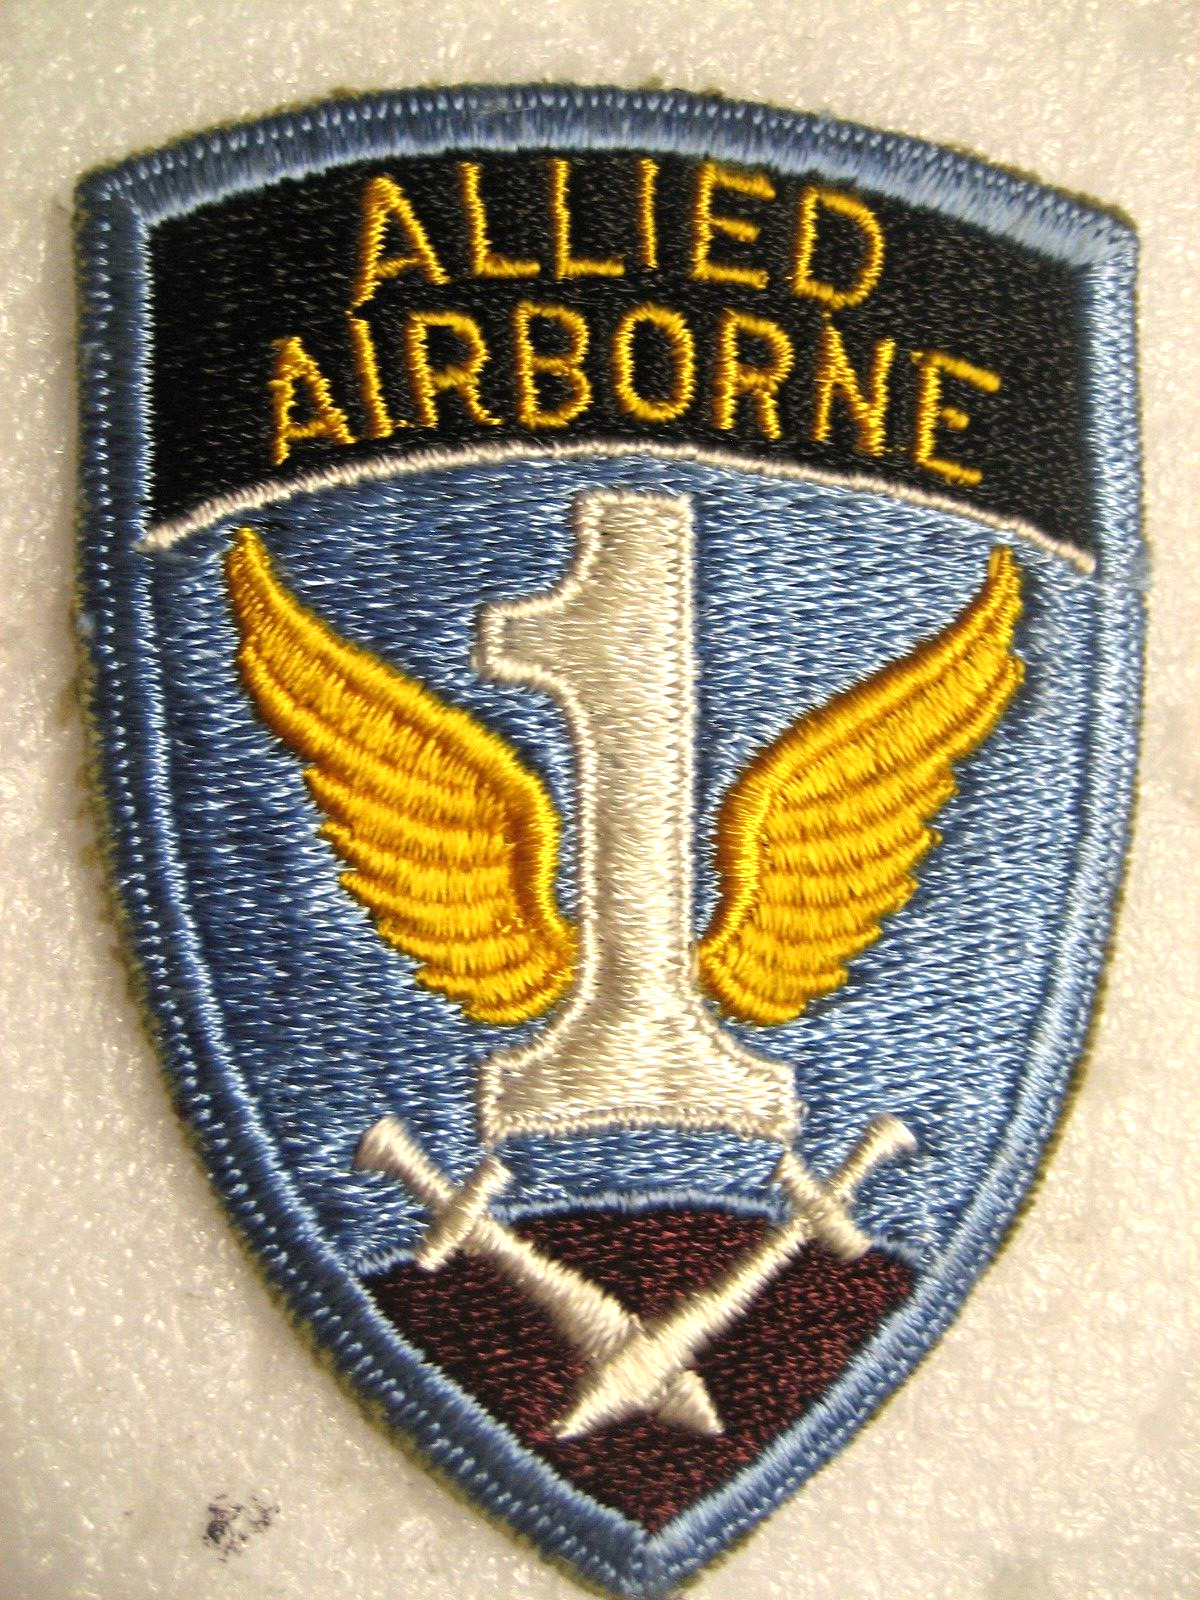 /US Army 1st Allied Airborne Patch, ww2, **